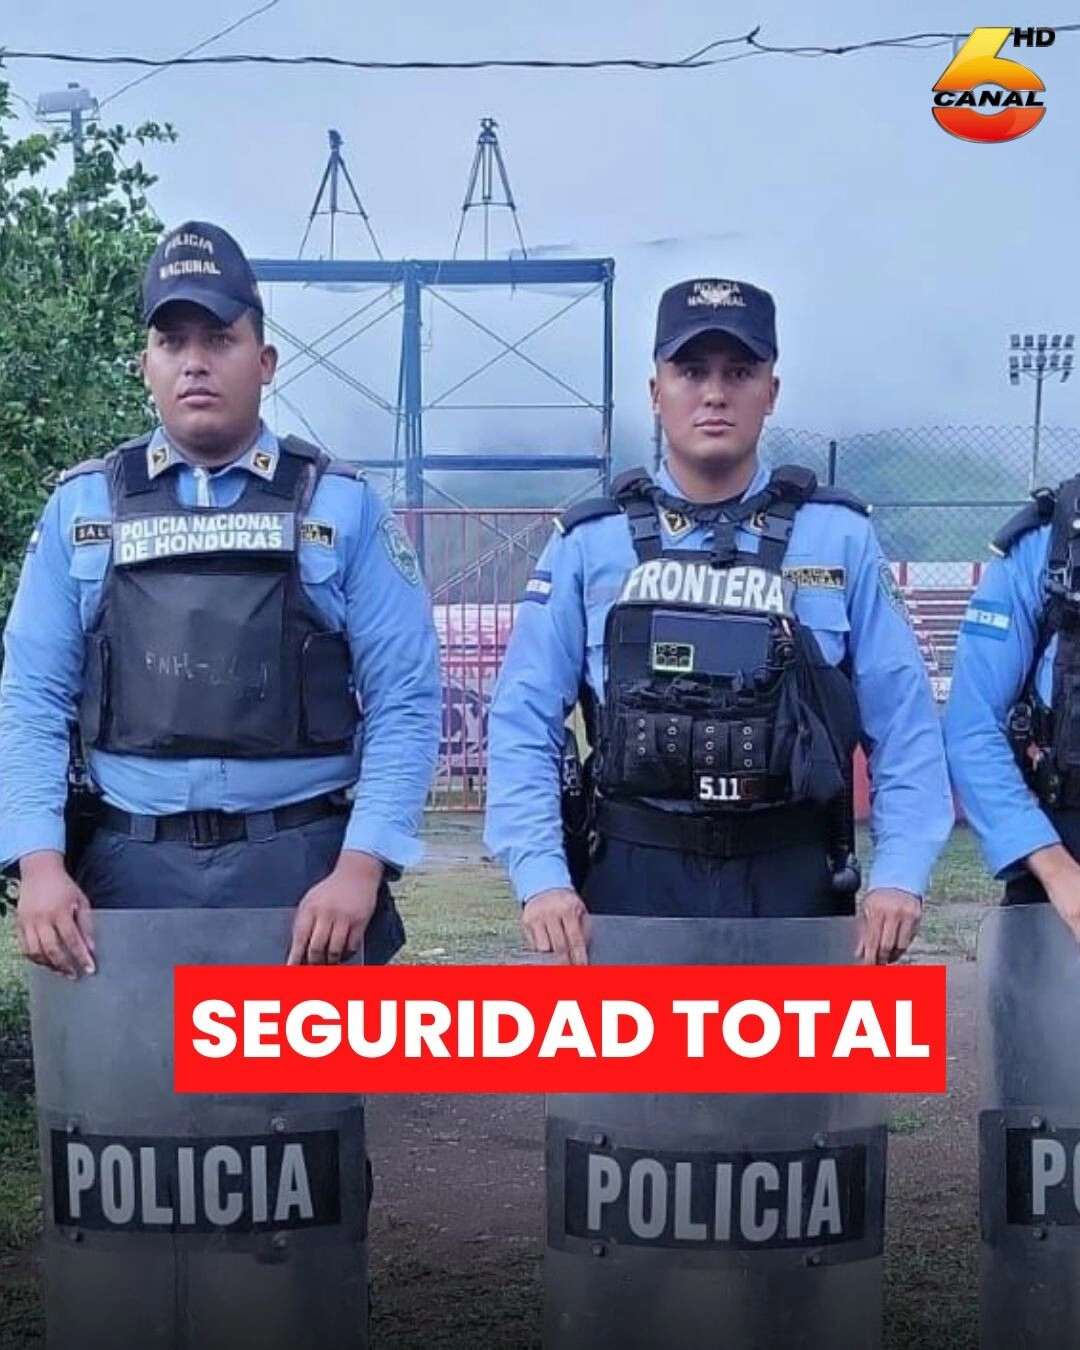 Policía Nacional garantiza seguridad durante encuentro deportivo de fútbol en Tocoa, Colón